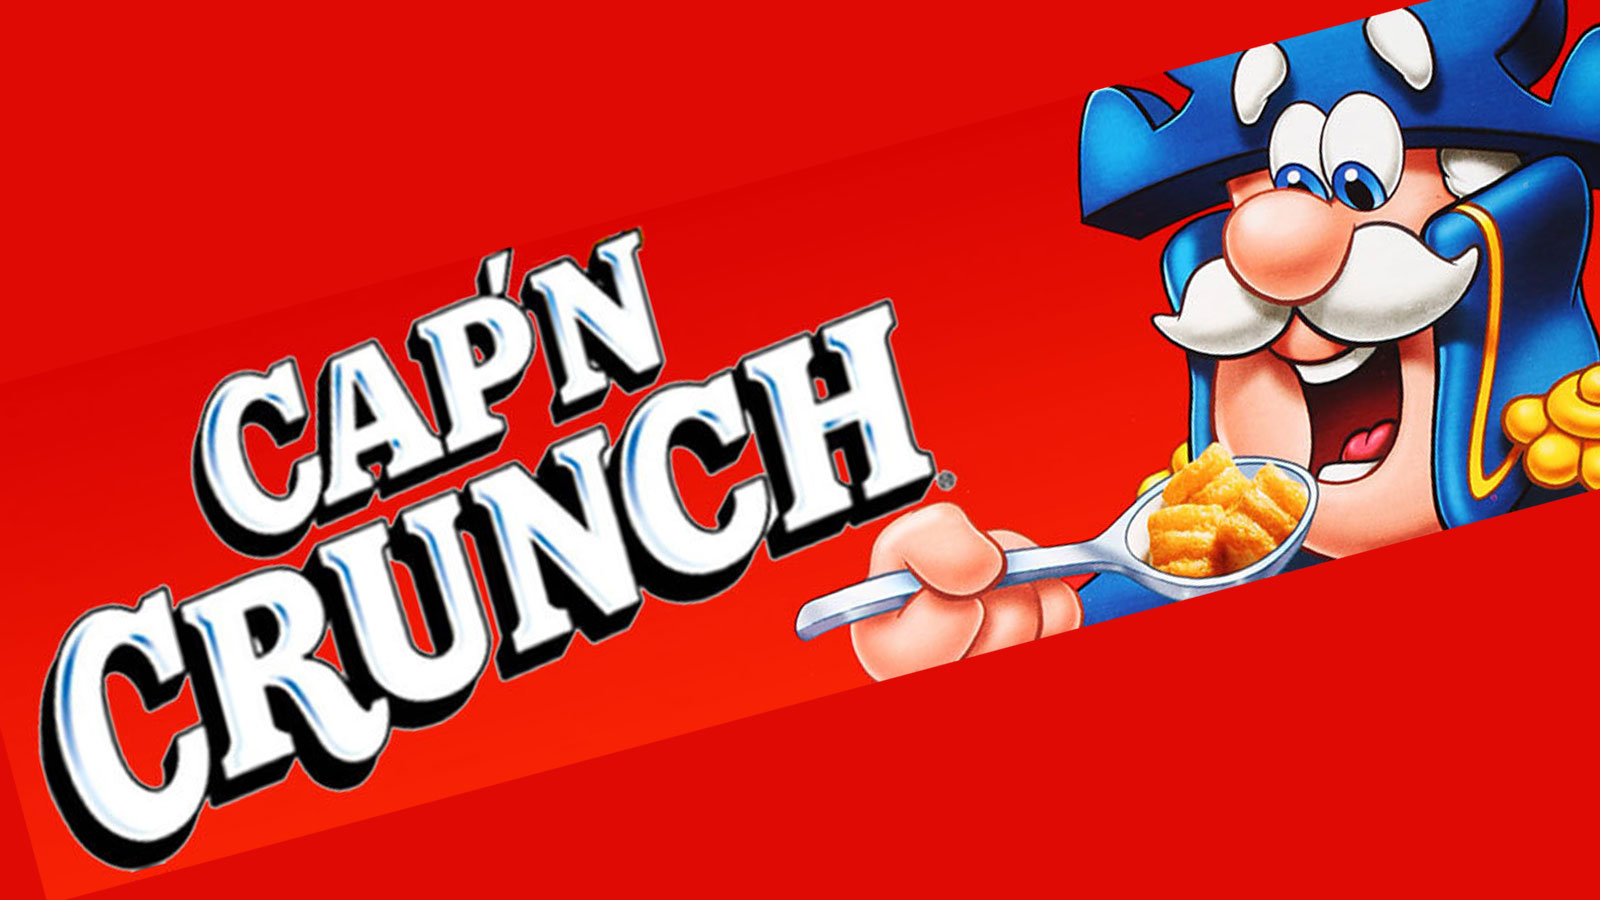 pix Captain Crunch Images mascot design evolution cap n crunch.